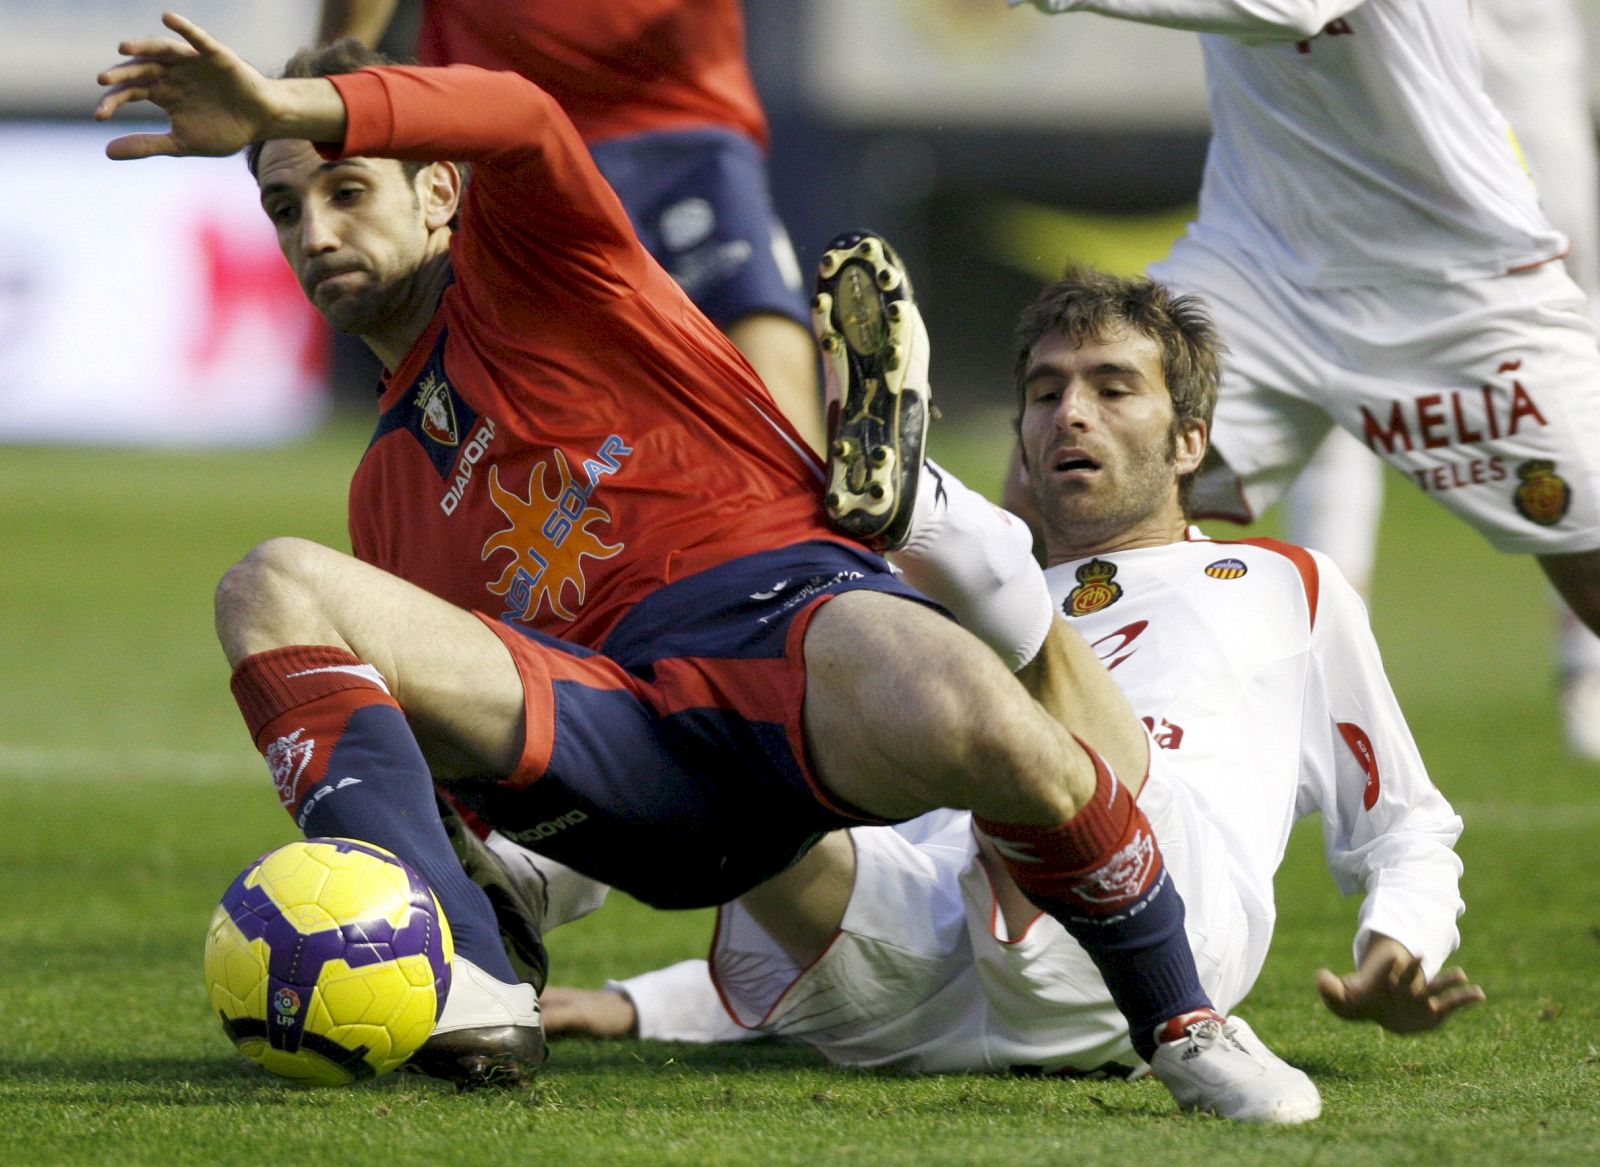 Torres arrebata el balón al centrocampista del Mallorca "Tuni"